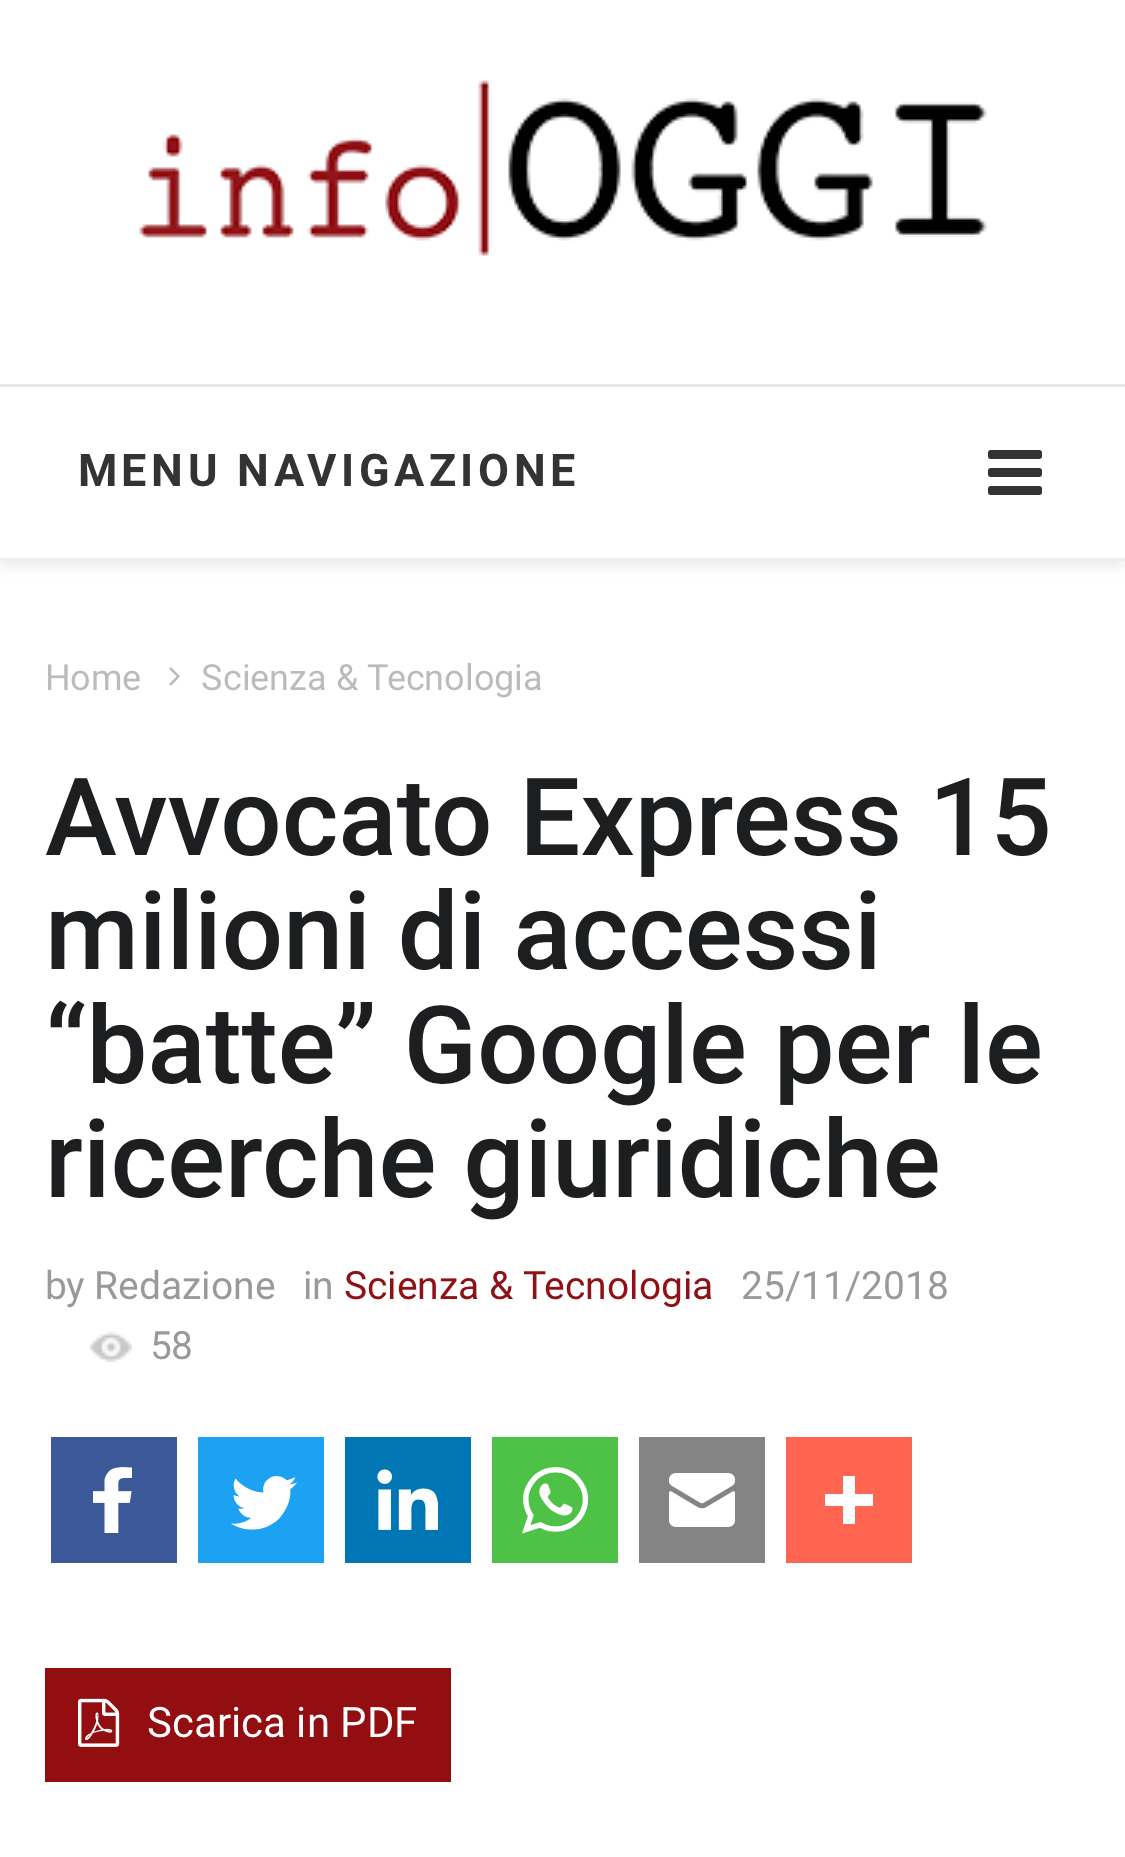 Avvocato Express 15 milioni di accessi “batte” Google per le ricerche giuridiche